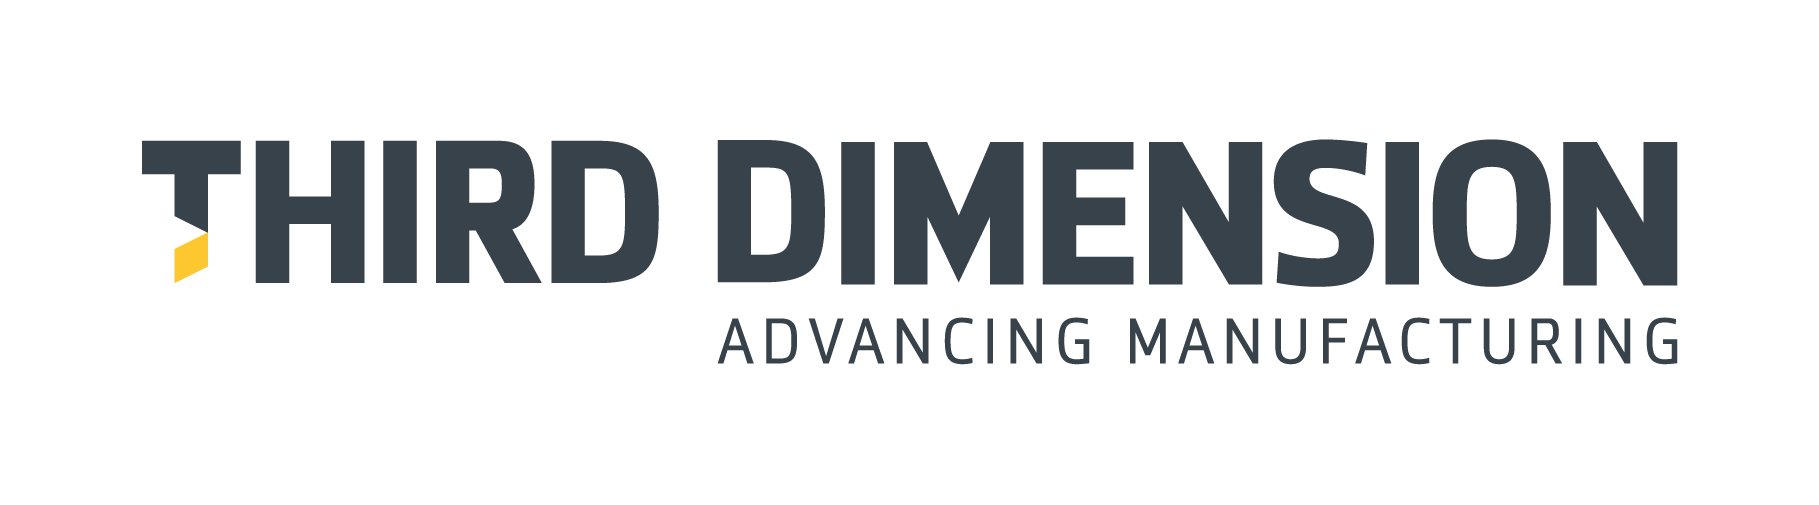 Third Dimension logo